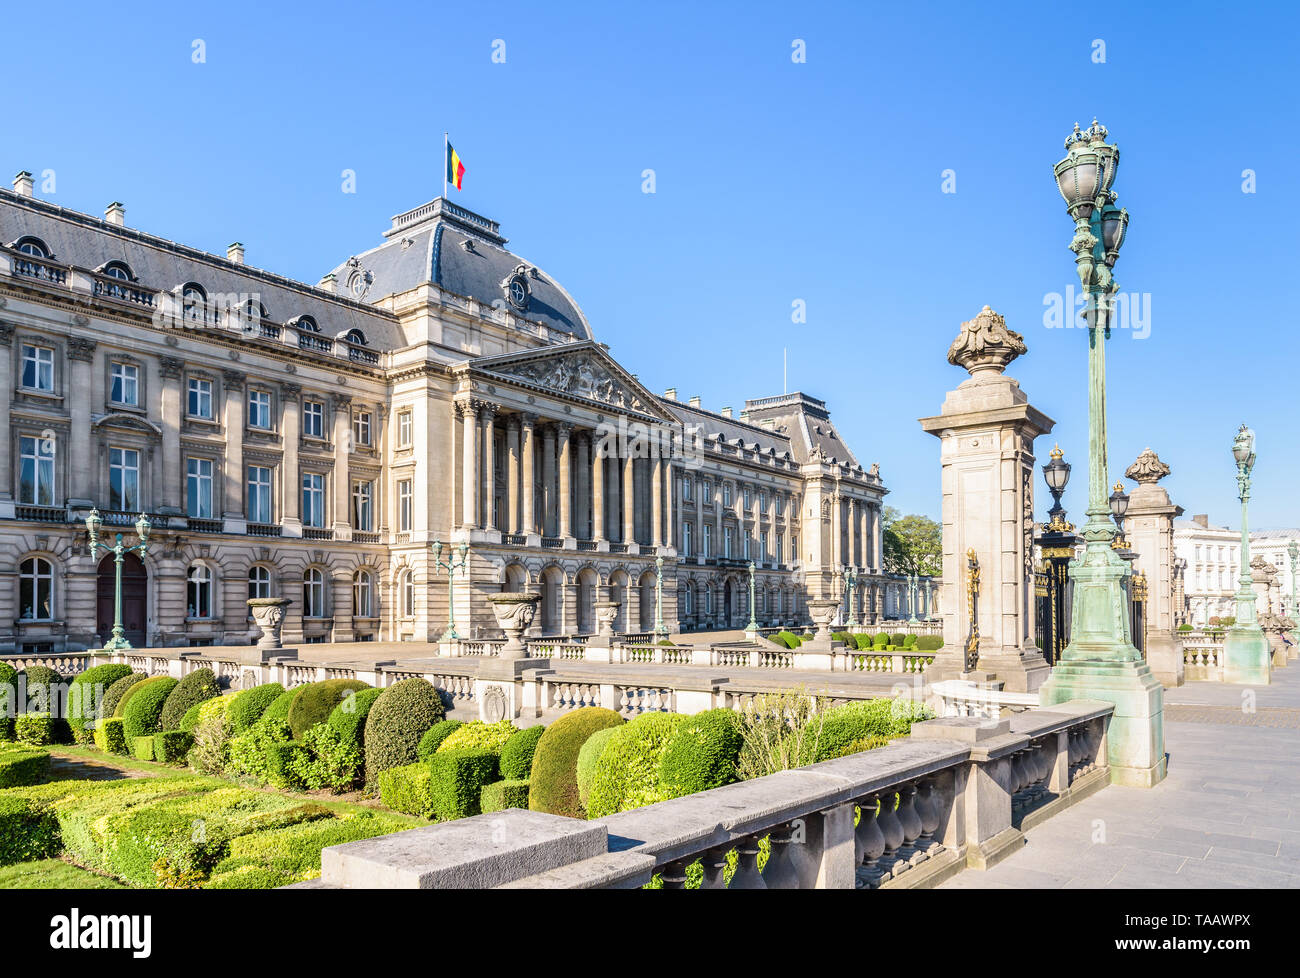 Fachada principal y el jardín frontal del Palacio Real de Bruselas, el palacio oficial del Rey y la Reina de los belgas en Bruselas, Bélgica. Foto de stock